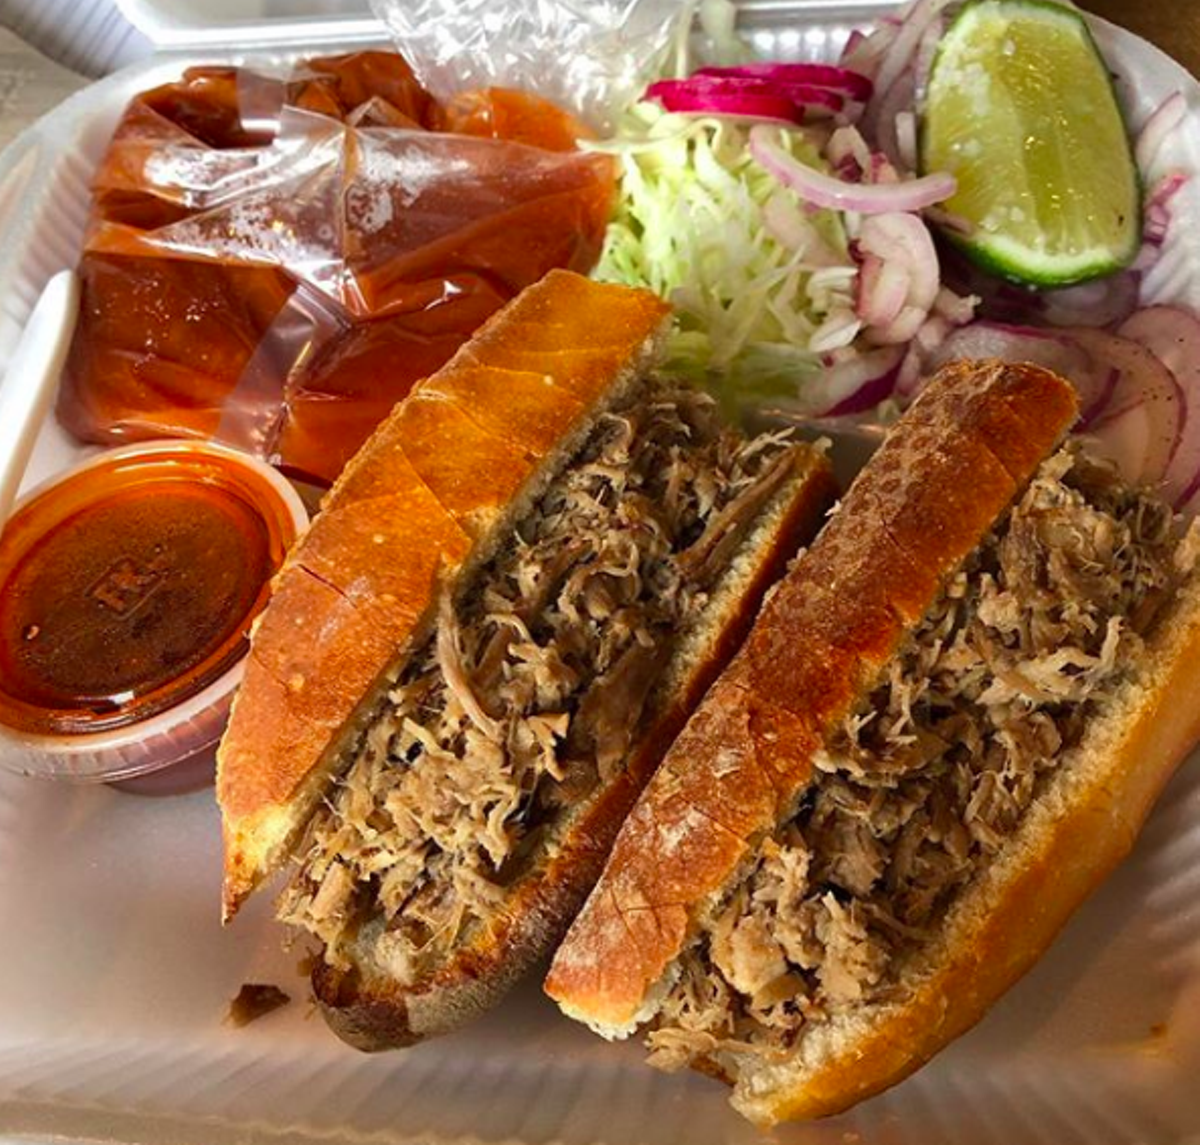 The 25 Best San Antonio Restaurants, According to Yelp | San Antonio ...